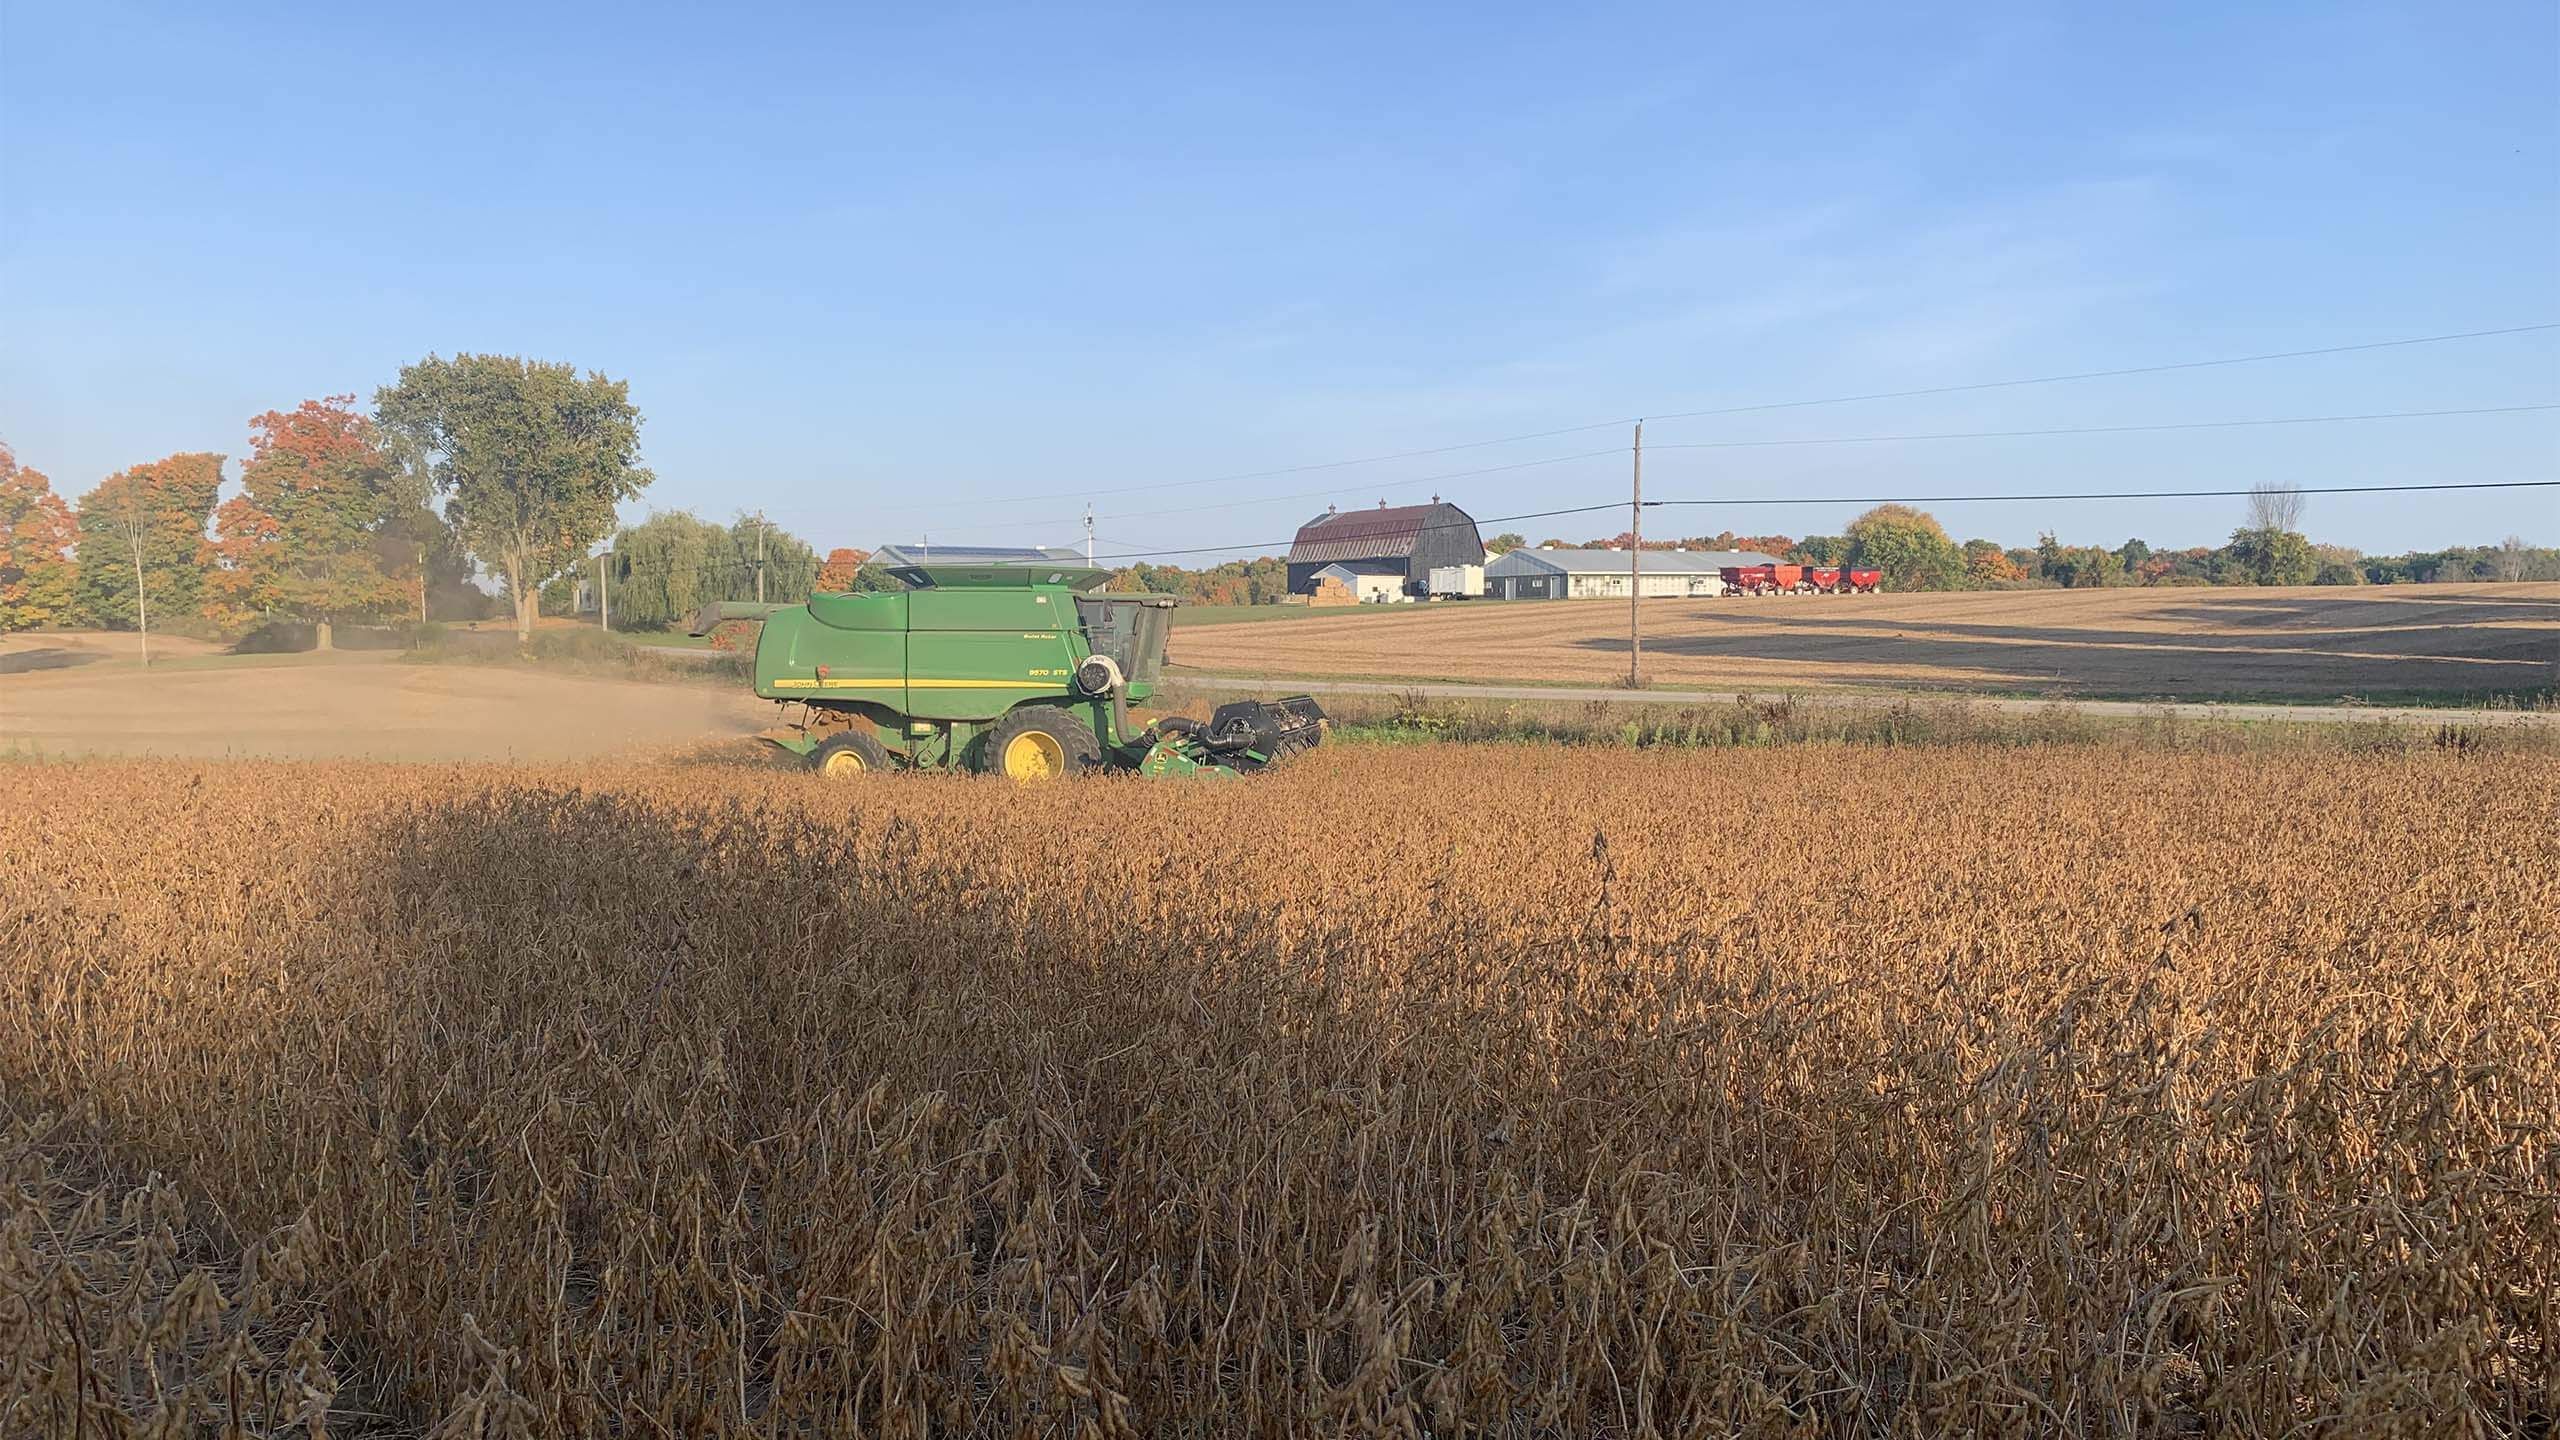 Harvex harvesting grain in the field